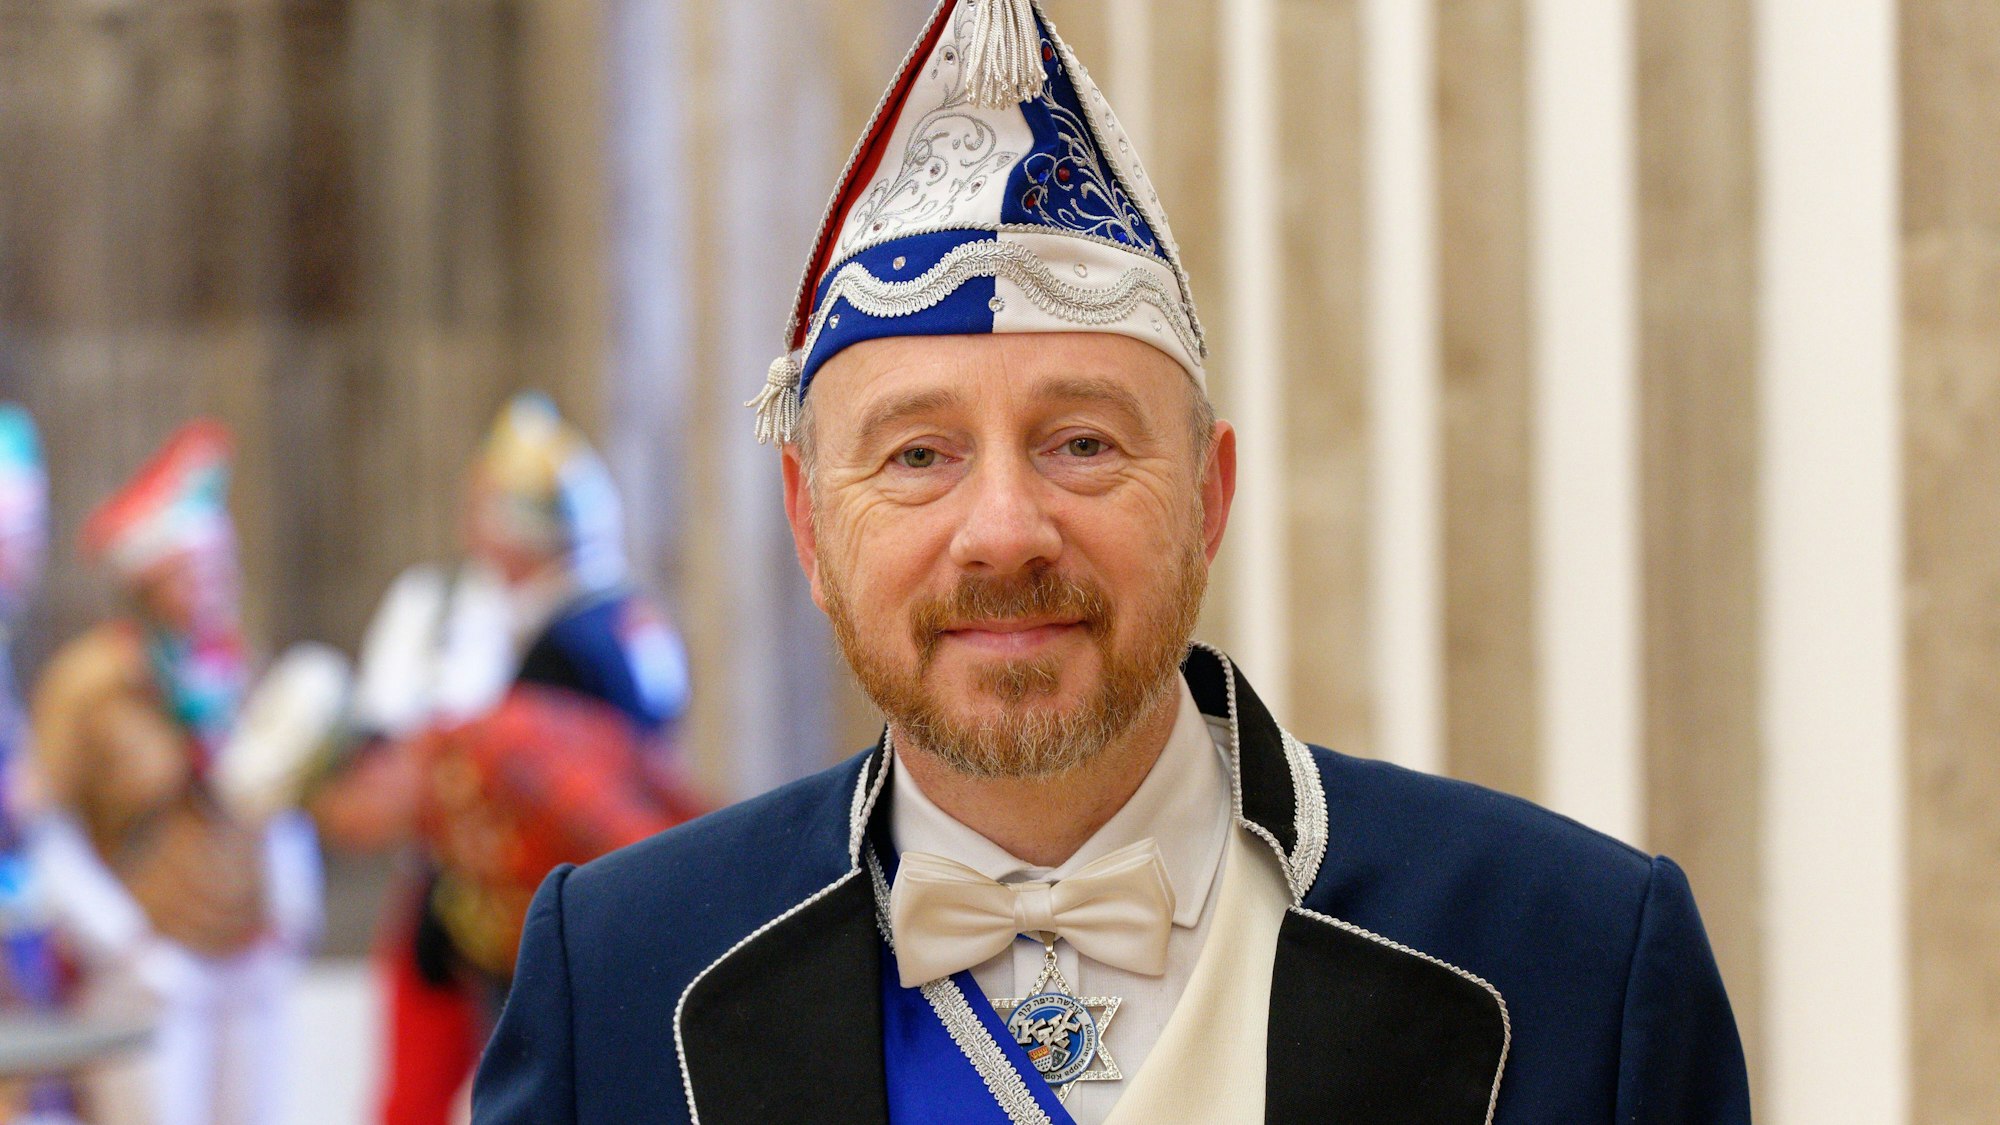 Aaron Knappstein, Präsident des jüdischen Karnevalsvereins „Kölsche Kippa Köpp“